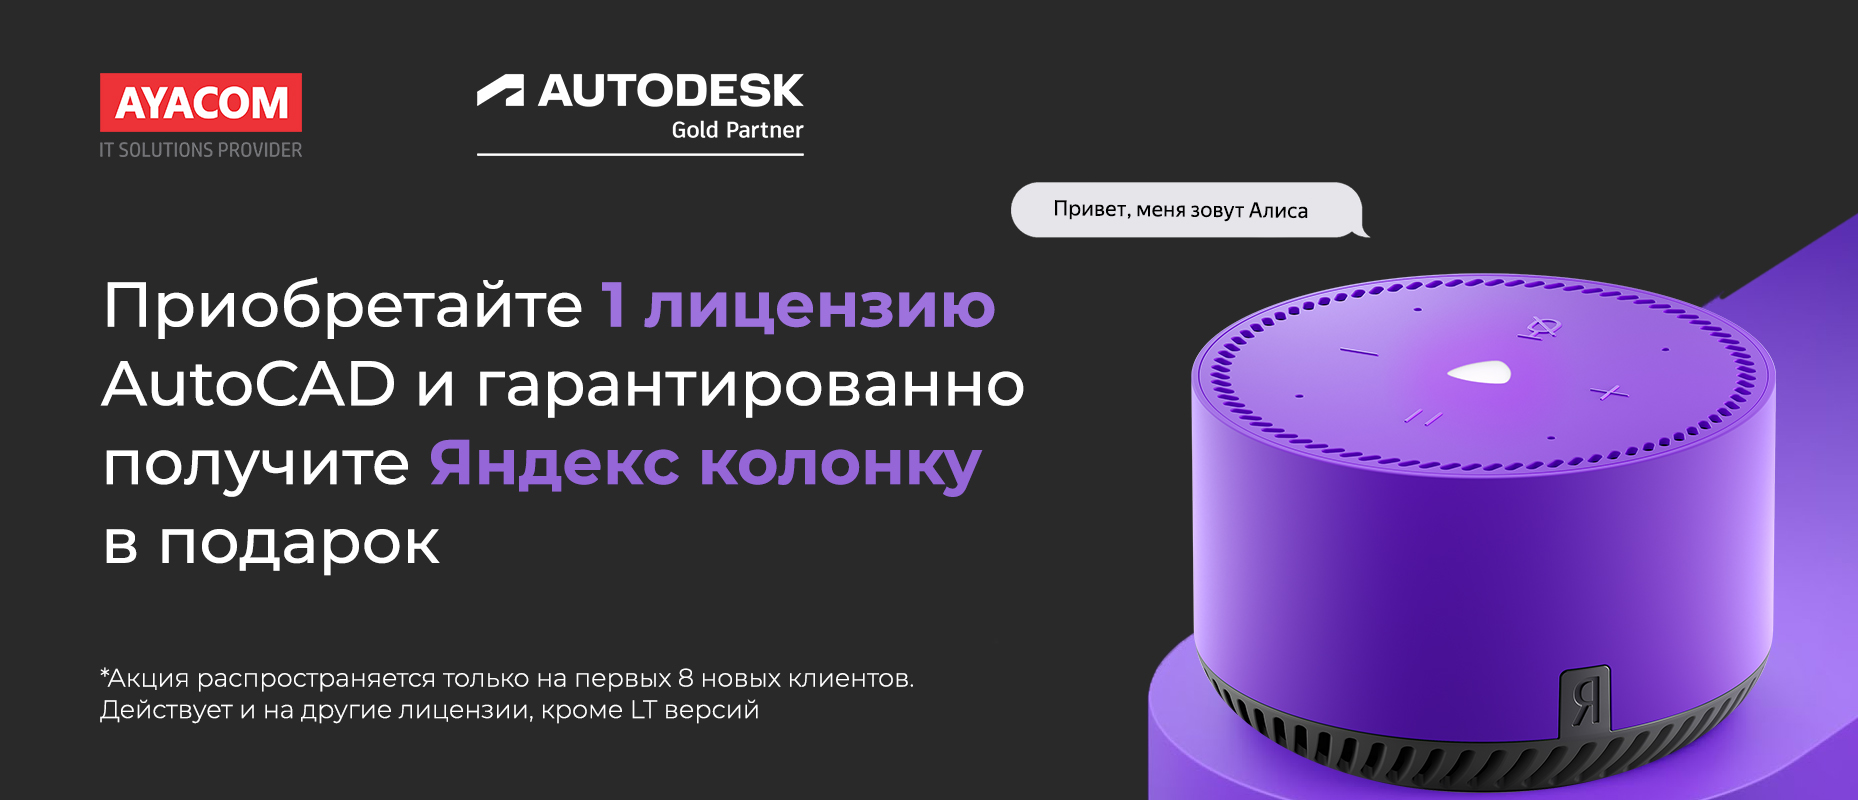 Приобретайте 1 лицензию AutoCAD и гарантированно получите 1 Яндекс колонку.